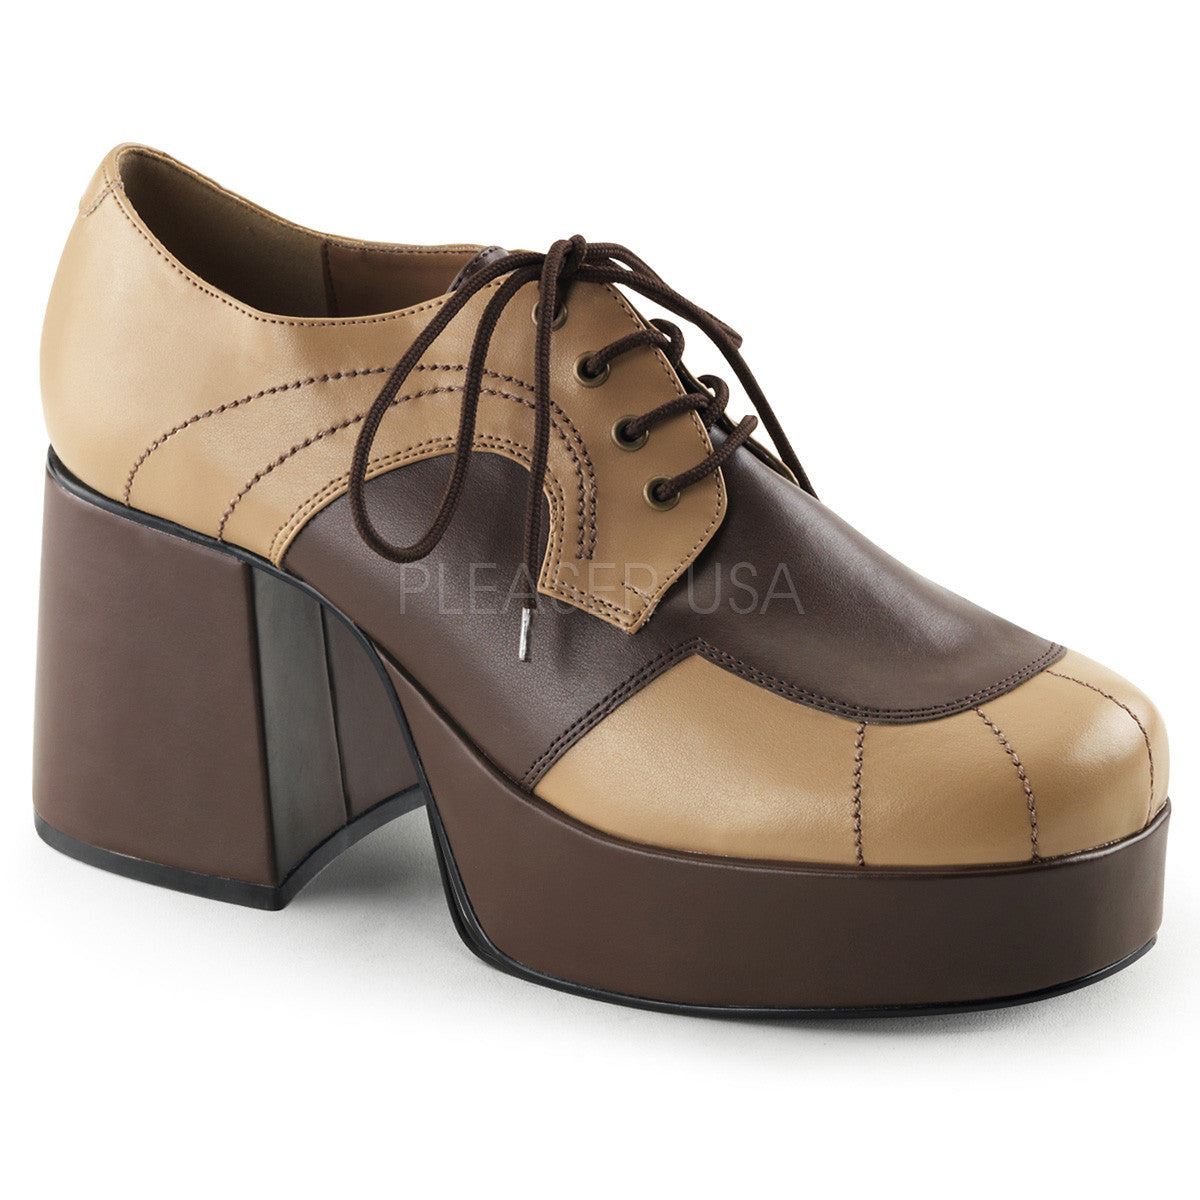 Men's Tan-Brown Disco 70s Platform Retro Costume Shoes - Shoecup.com